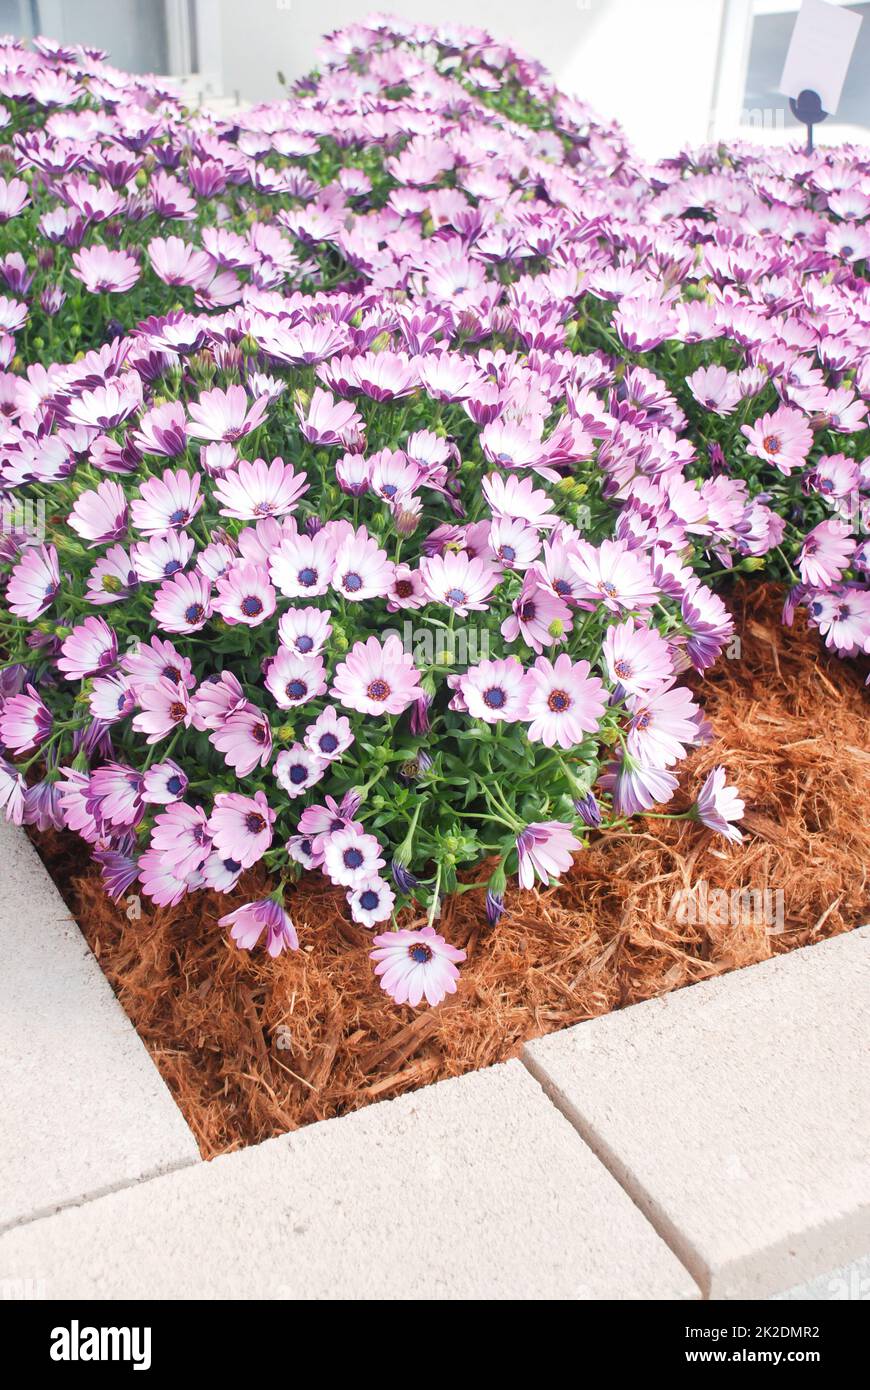 Hellviolette osteospermum- oder Dimorphotheca-Blumen, violette Blumen Stockfoto